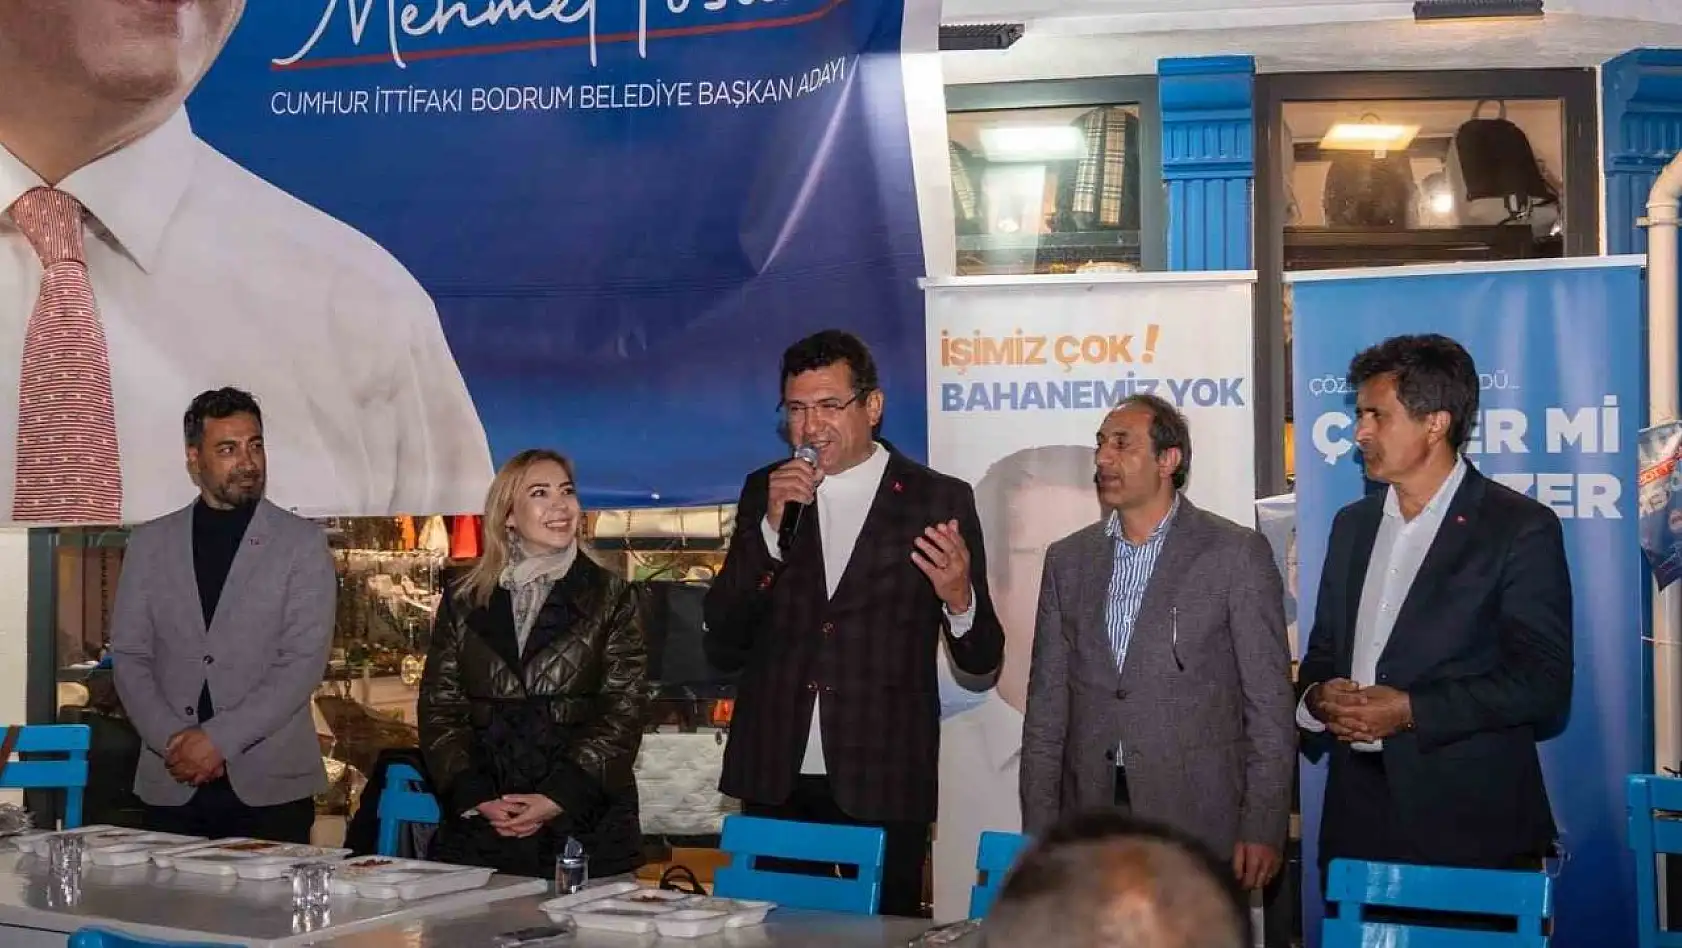 Cumhur İttifakı Bodrum Belediye Başkan Adayı Tosun'dan 'hizmet seferberliği' sözü